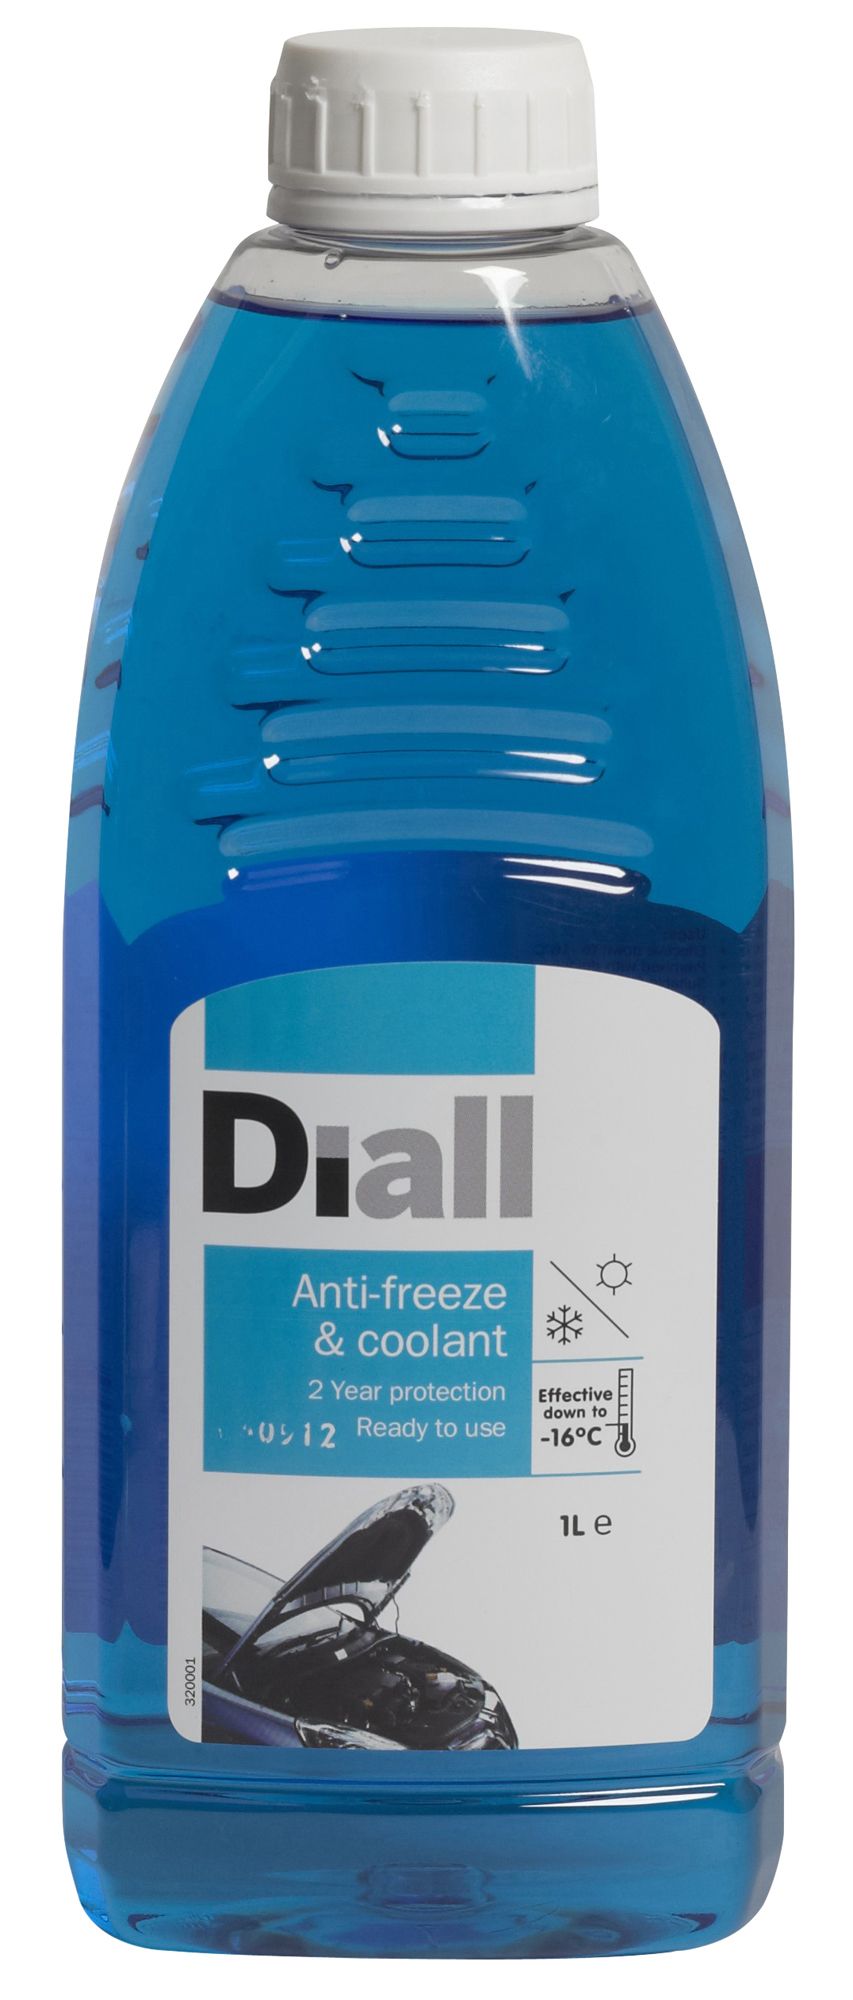 Diall Blue Anti-freeze & coolant, 1L Bottle